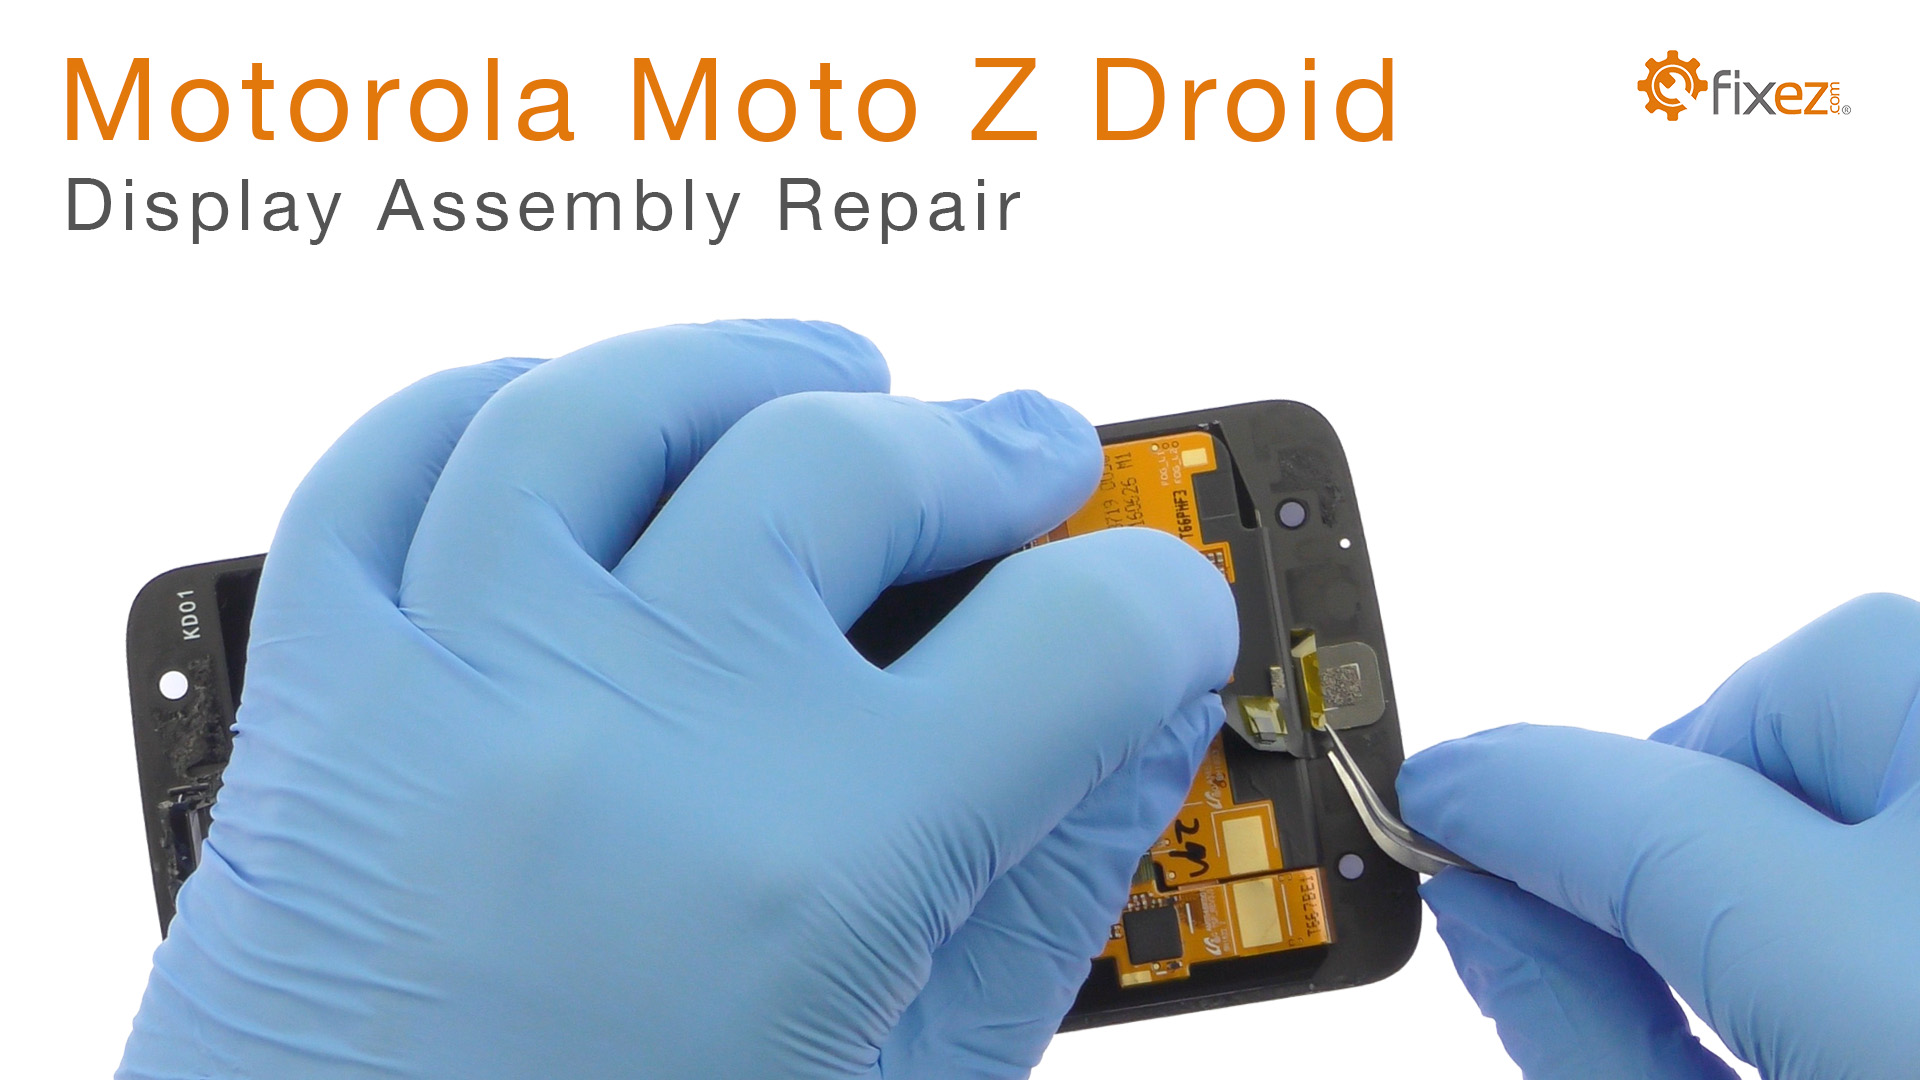 Motorola Moto Z Droid Display Assembly Repair